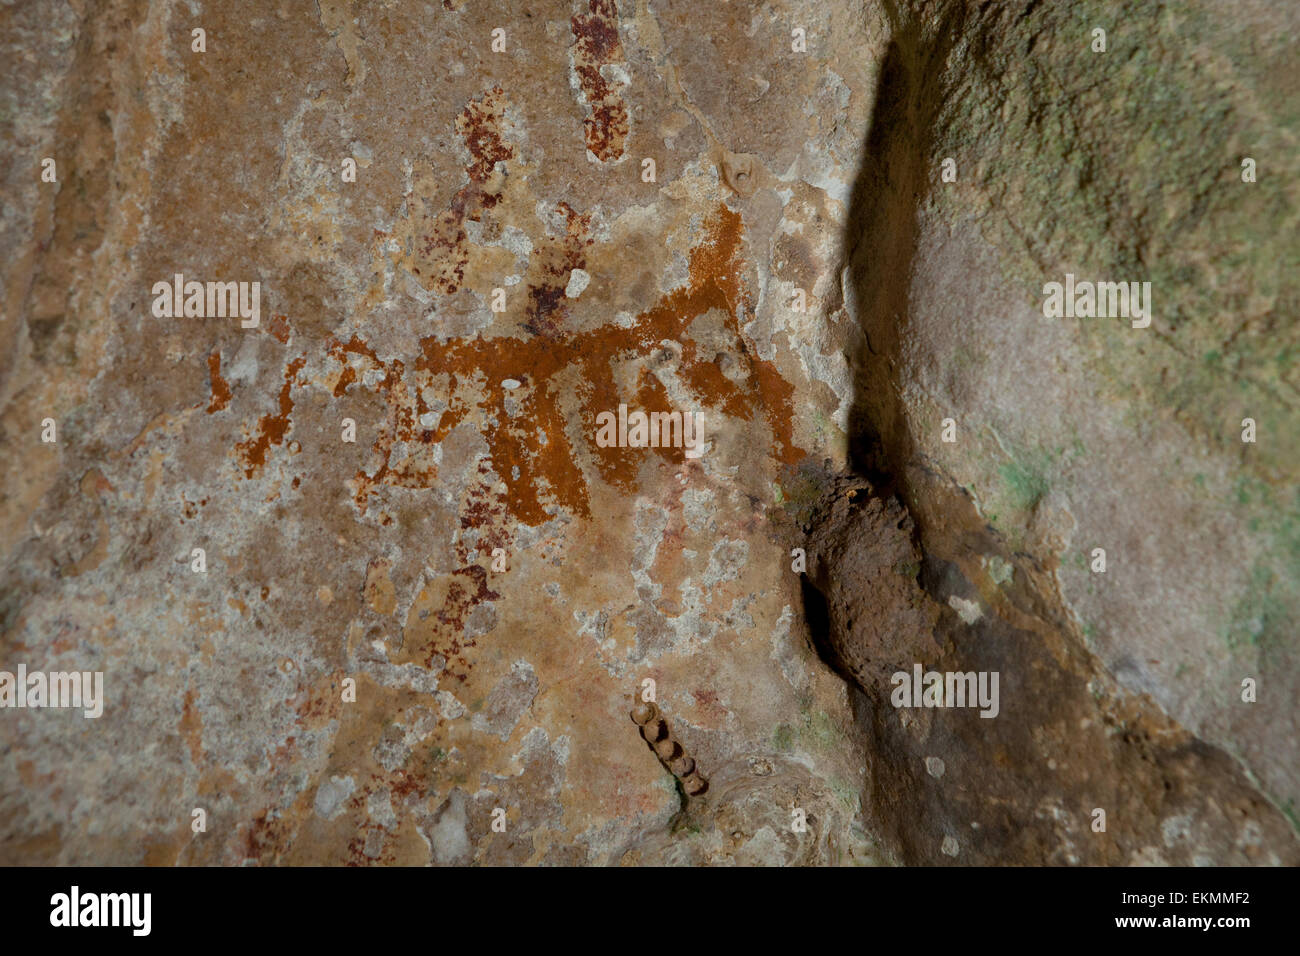 Antica pittura rupestre presso il sito preistorico di sepoltura di Harimau Cave, Padangbindu, Sumatra del Sud, Indonesia. Foto Stock